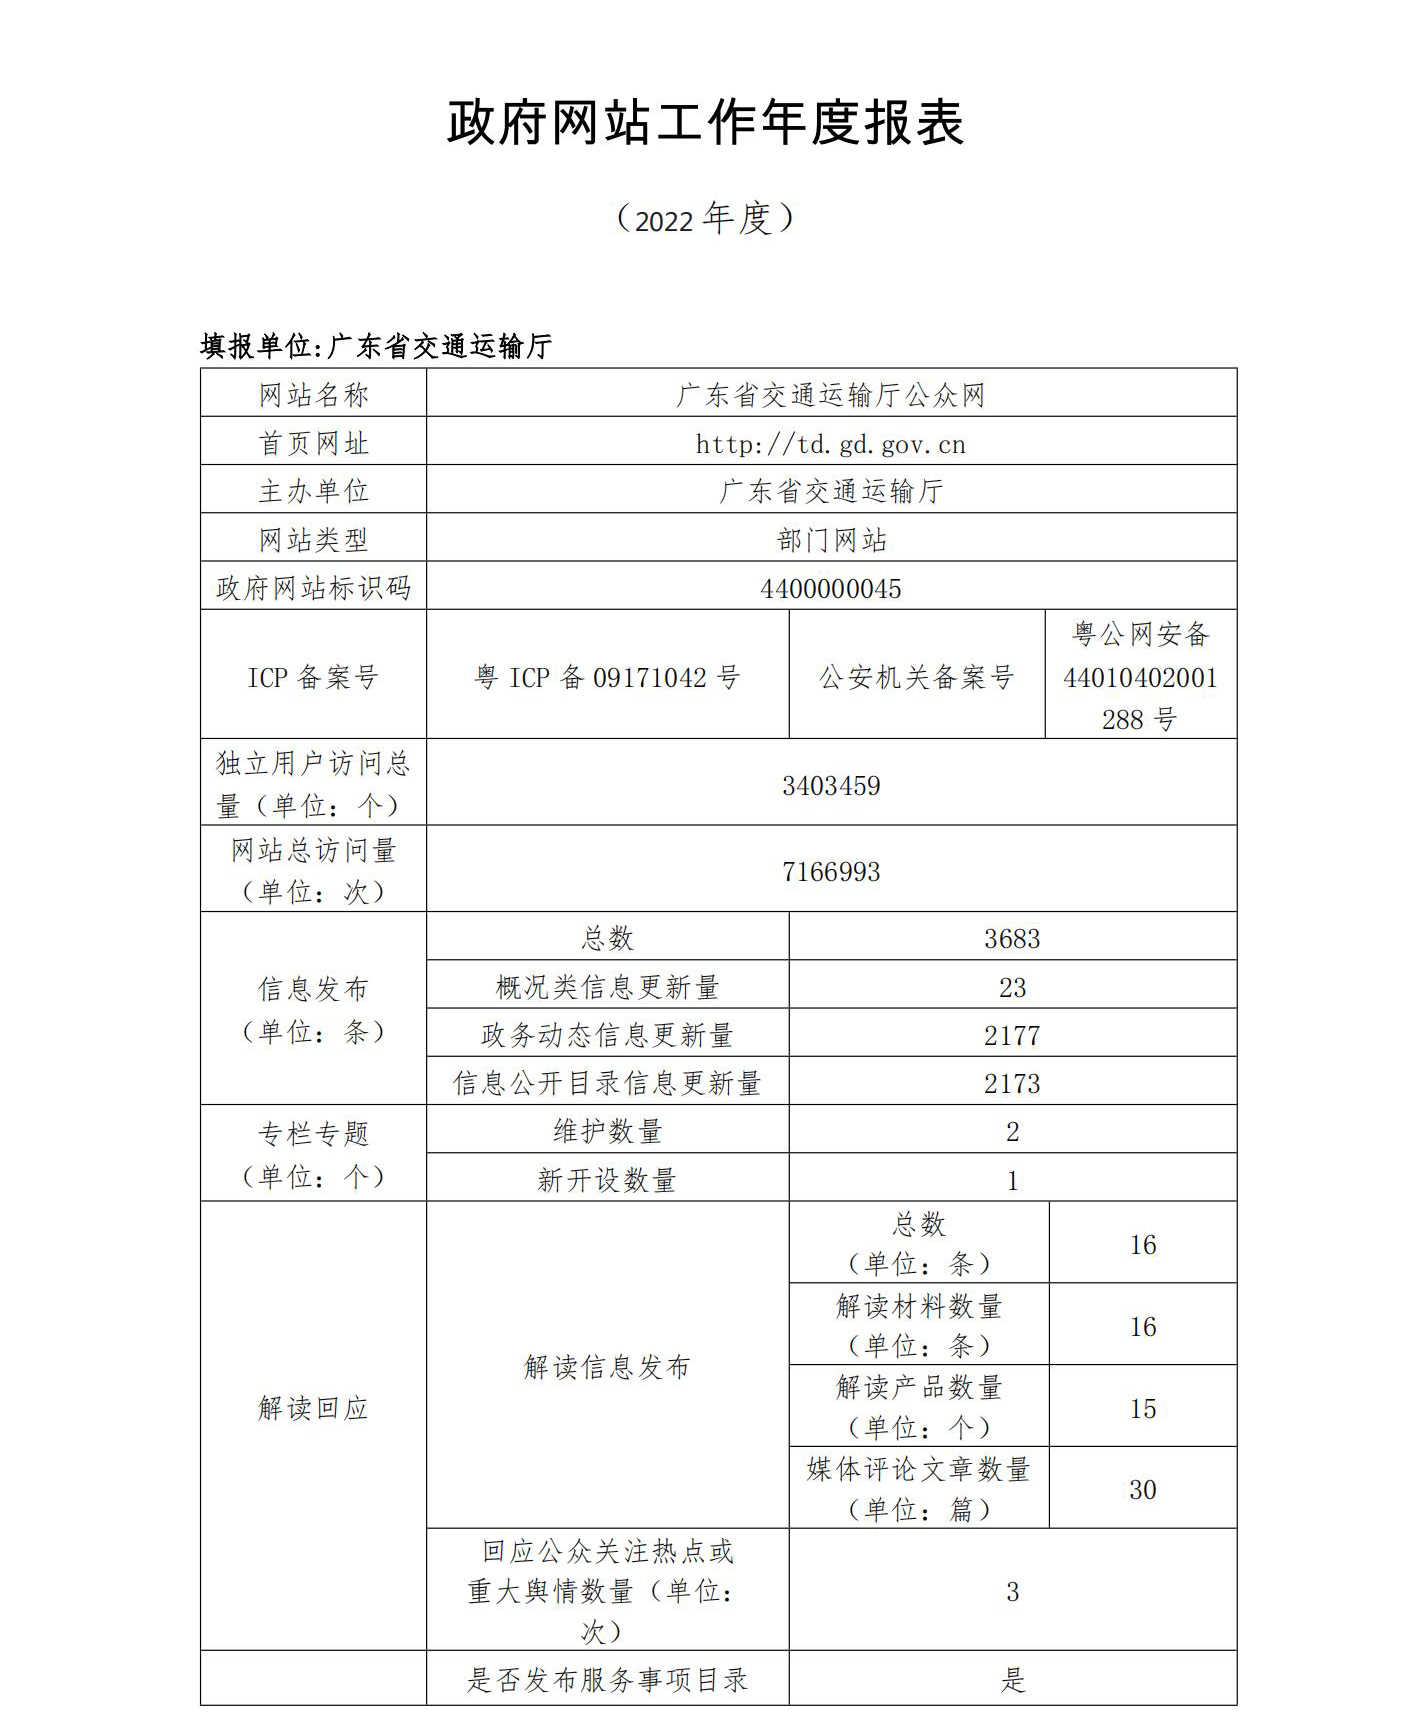 广东省交通运输厅2022政府网站工作年度报表 (1)_00.jpg